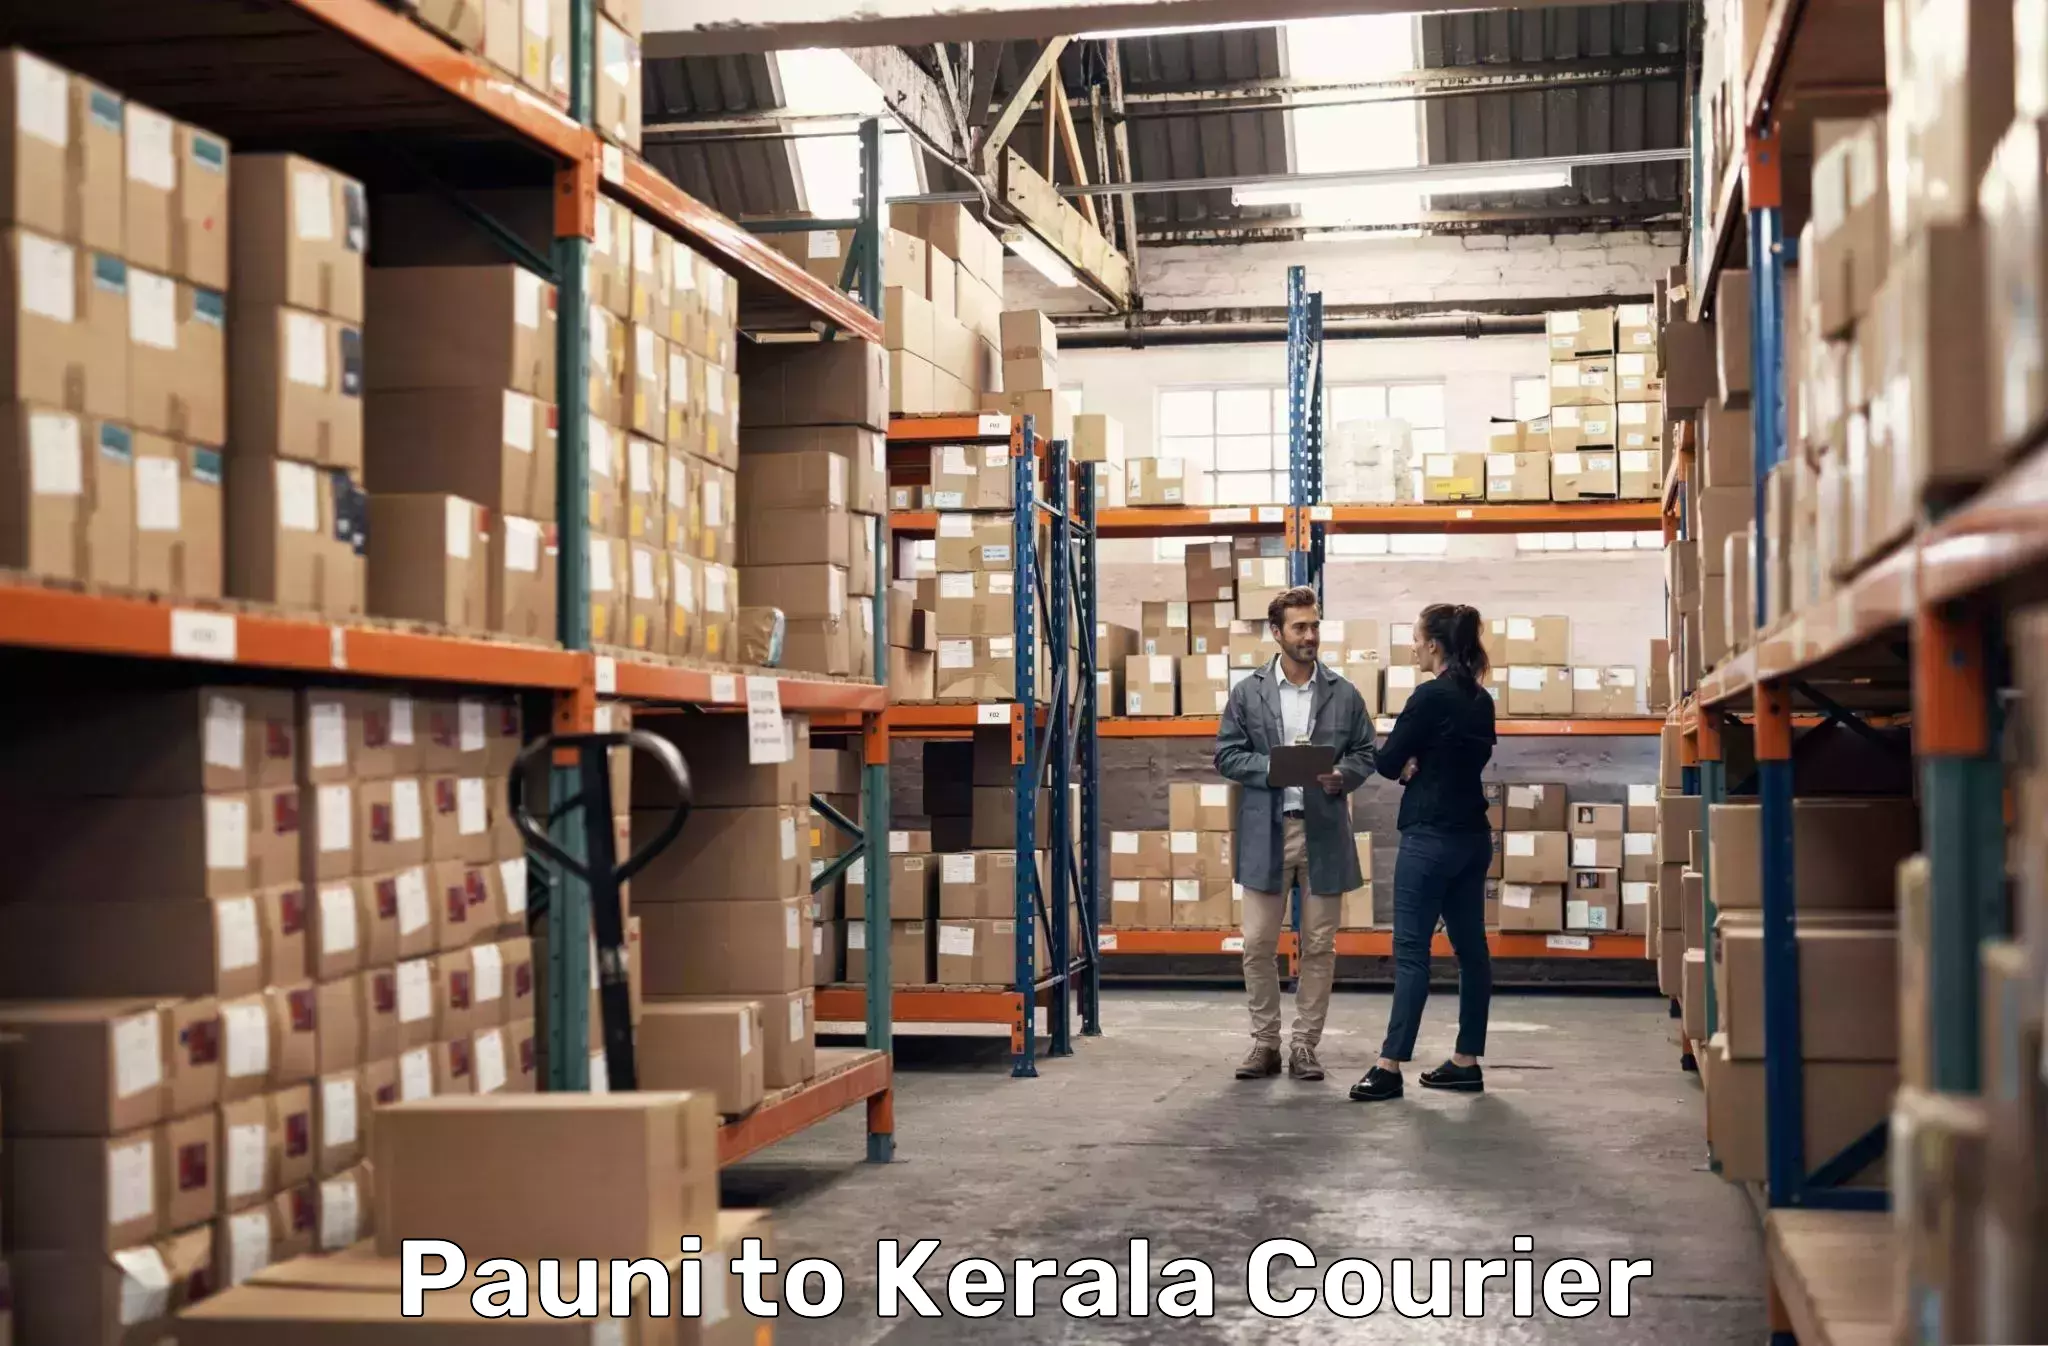 Professional courier handling Pauni to Koyilandy